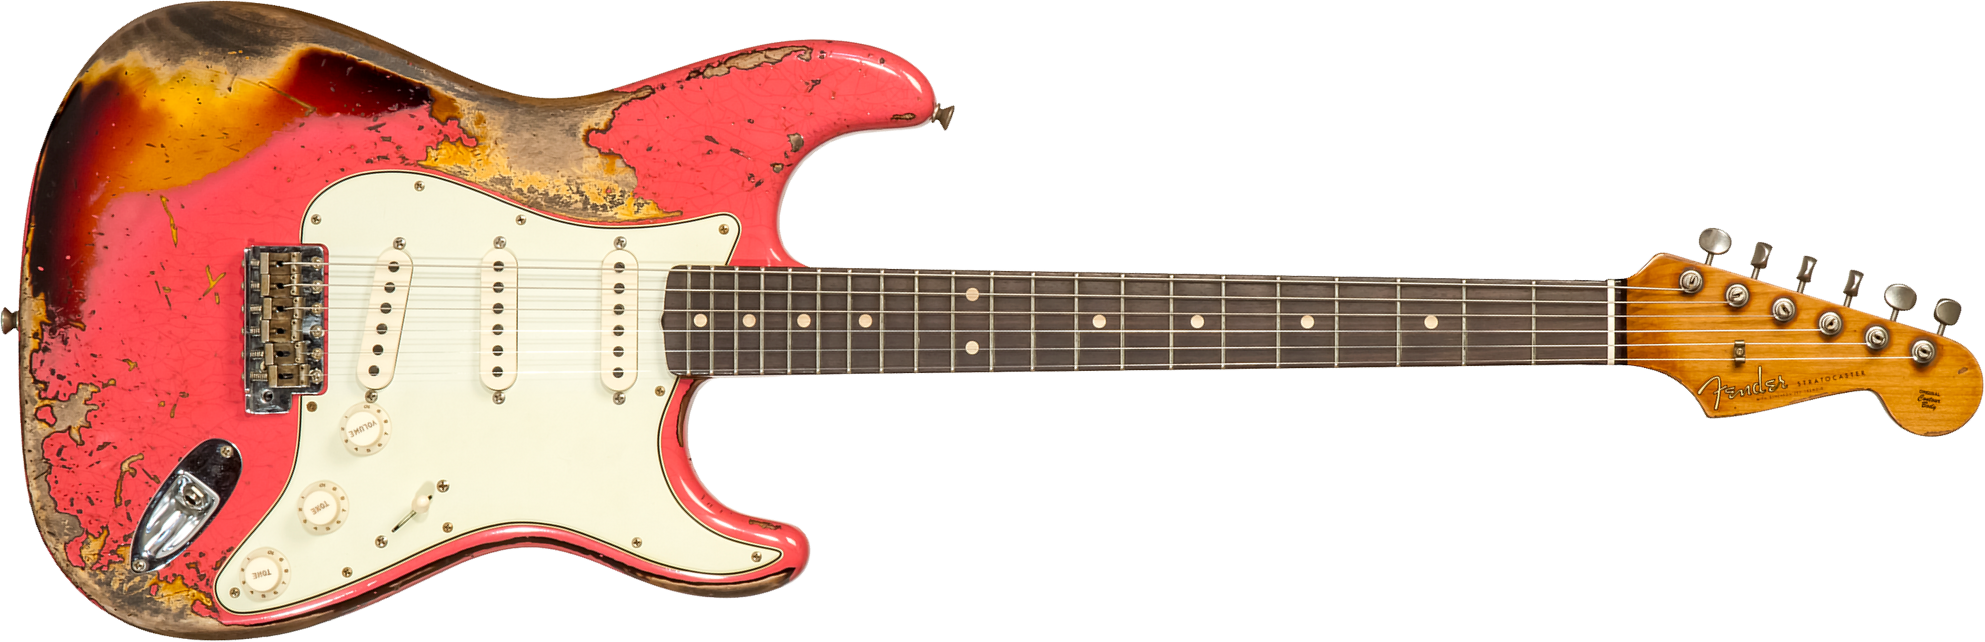 Fender Custom Shop Strat 1960/63 3s Trem Rw #cz566764 - Super Heavy Relic Fiesta Red Ov. 3-color Sunburst - Guitare Électrique Forme Str - Main pictur